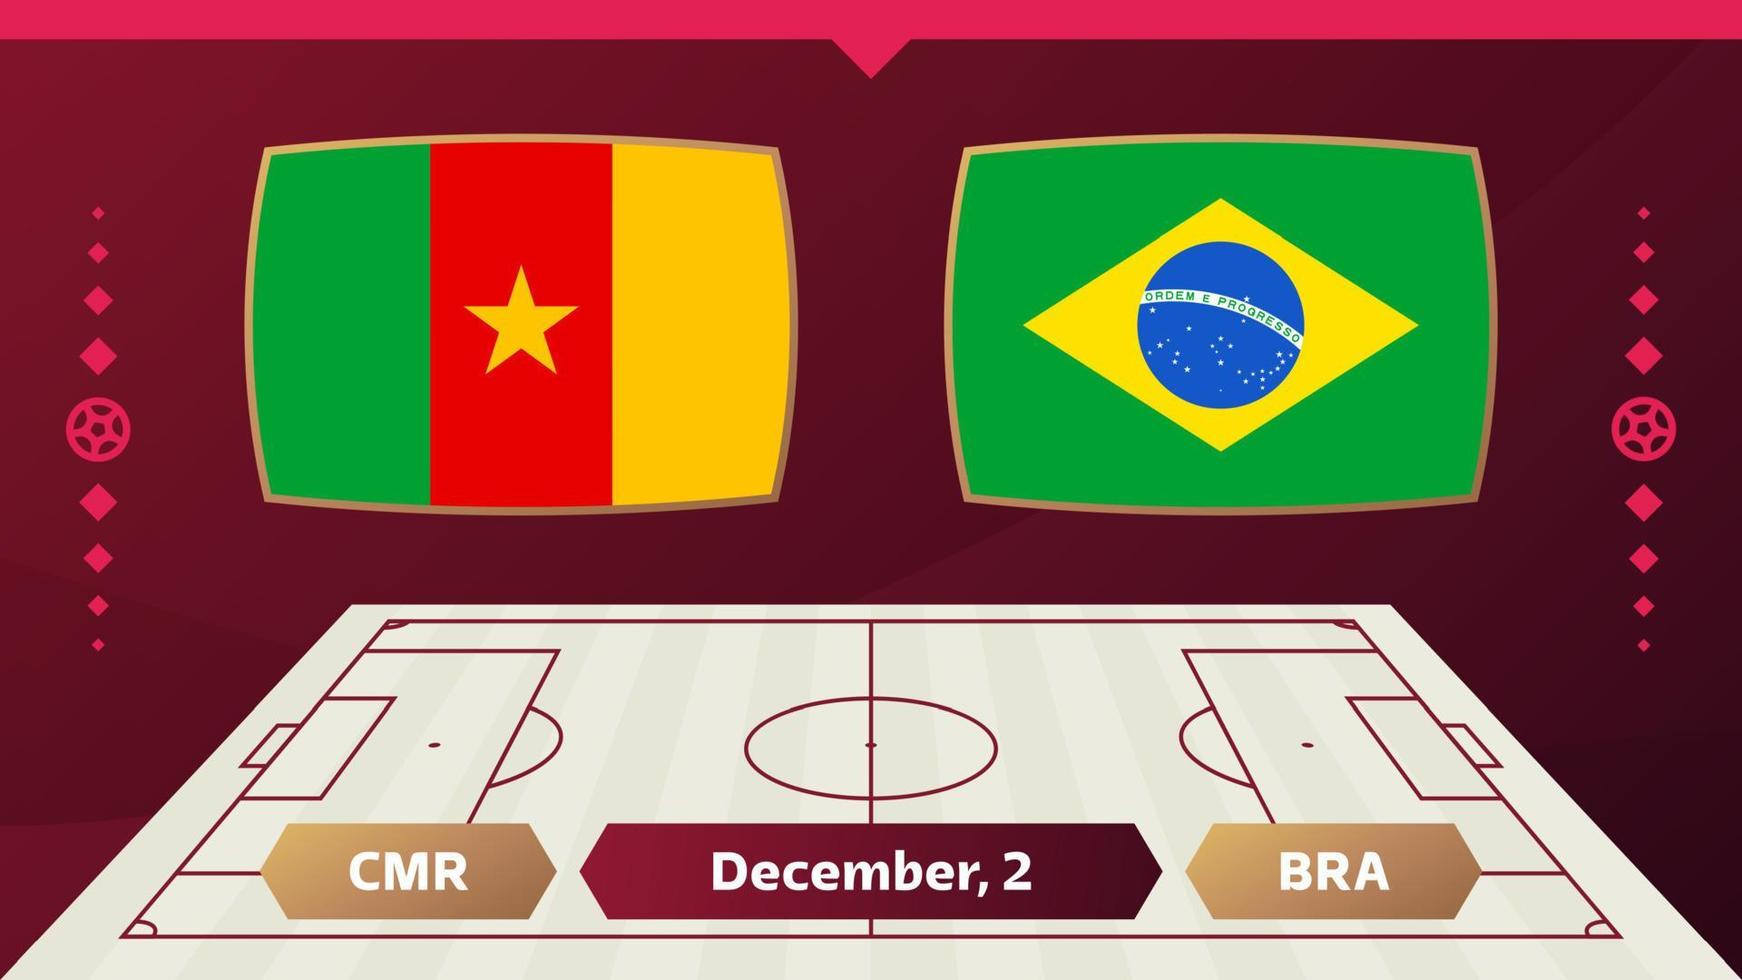 camerún vs brasil, fútbol 2022, grupo g. partido de campeonato mundial de fútbol versus antecedentes deportivos de introducción de equipos, afiche final de la competencia de campeonato, ilustración vectorial. vector